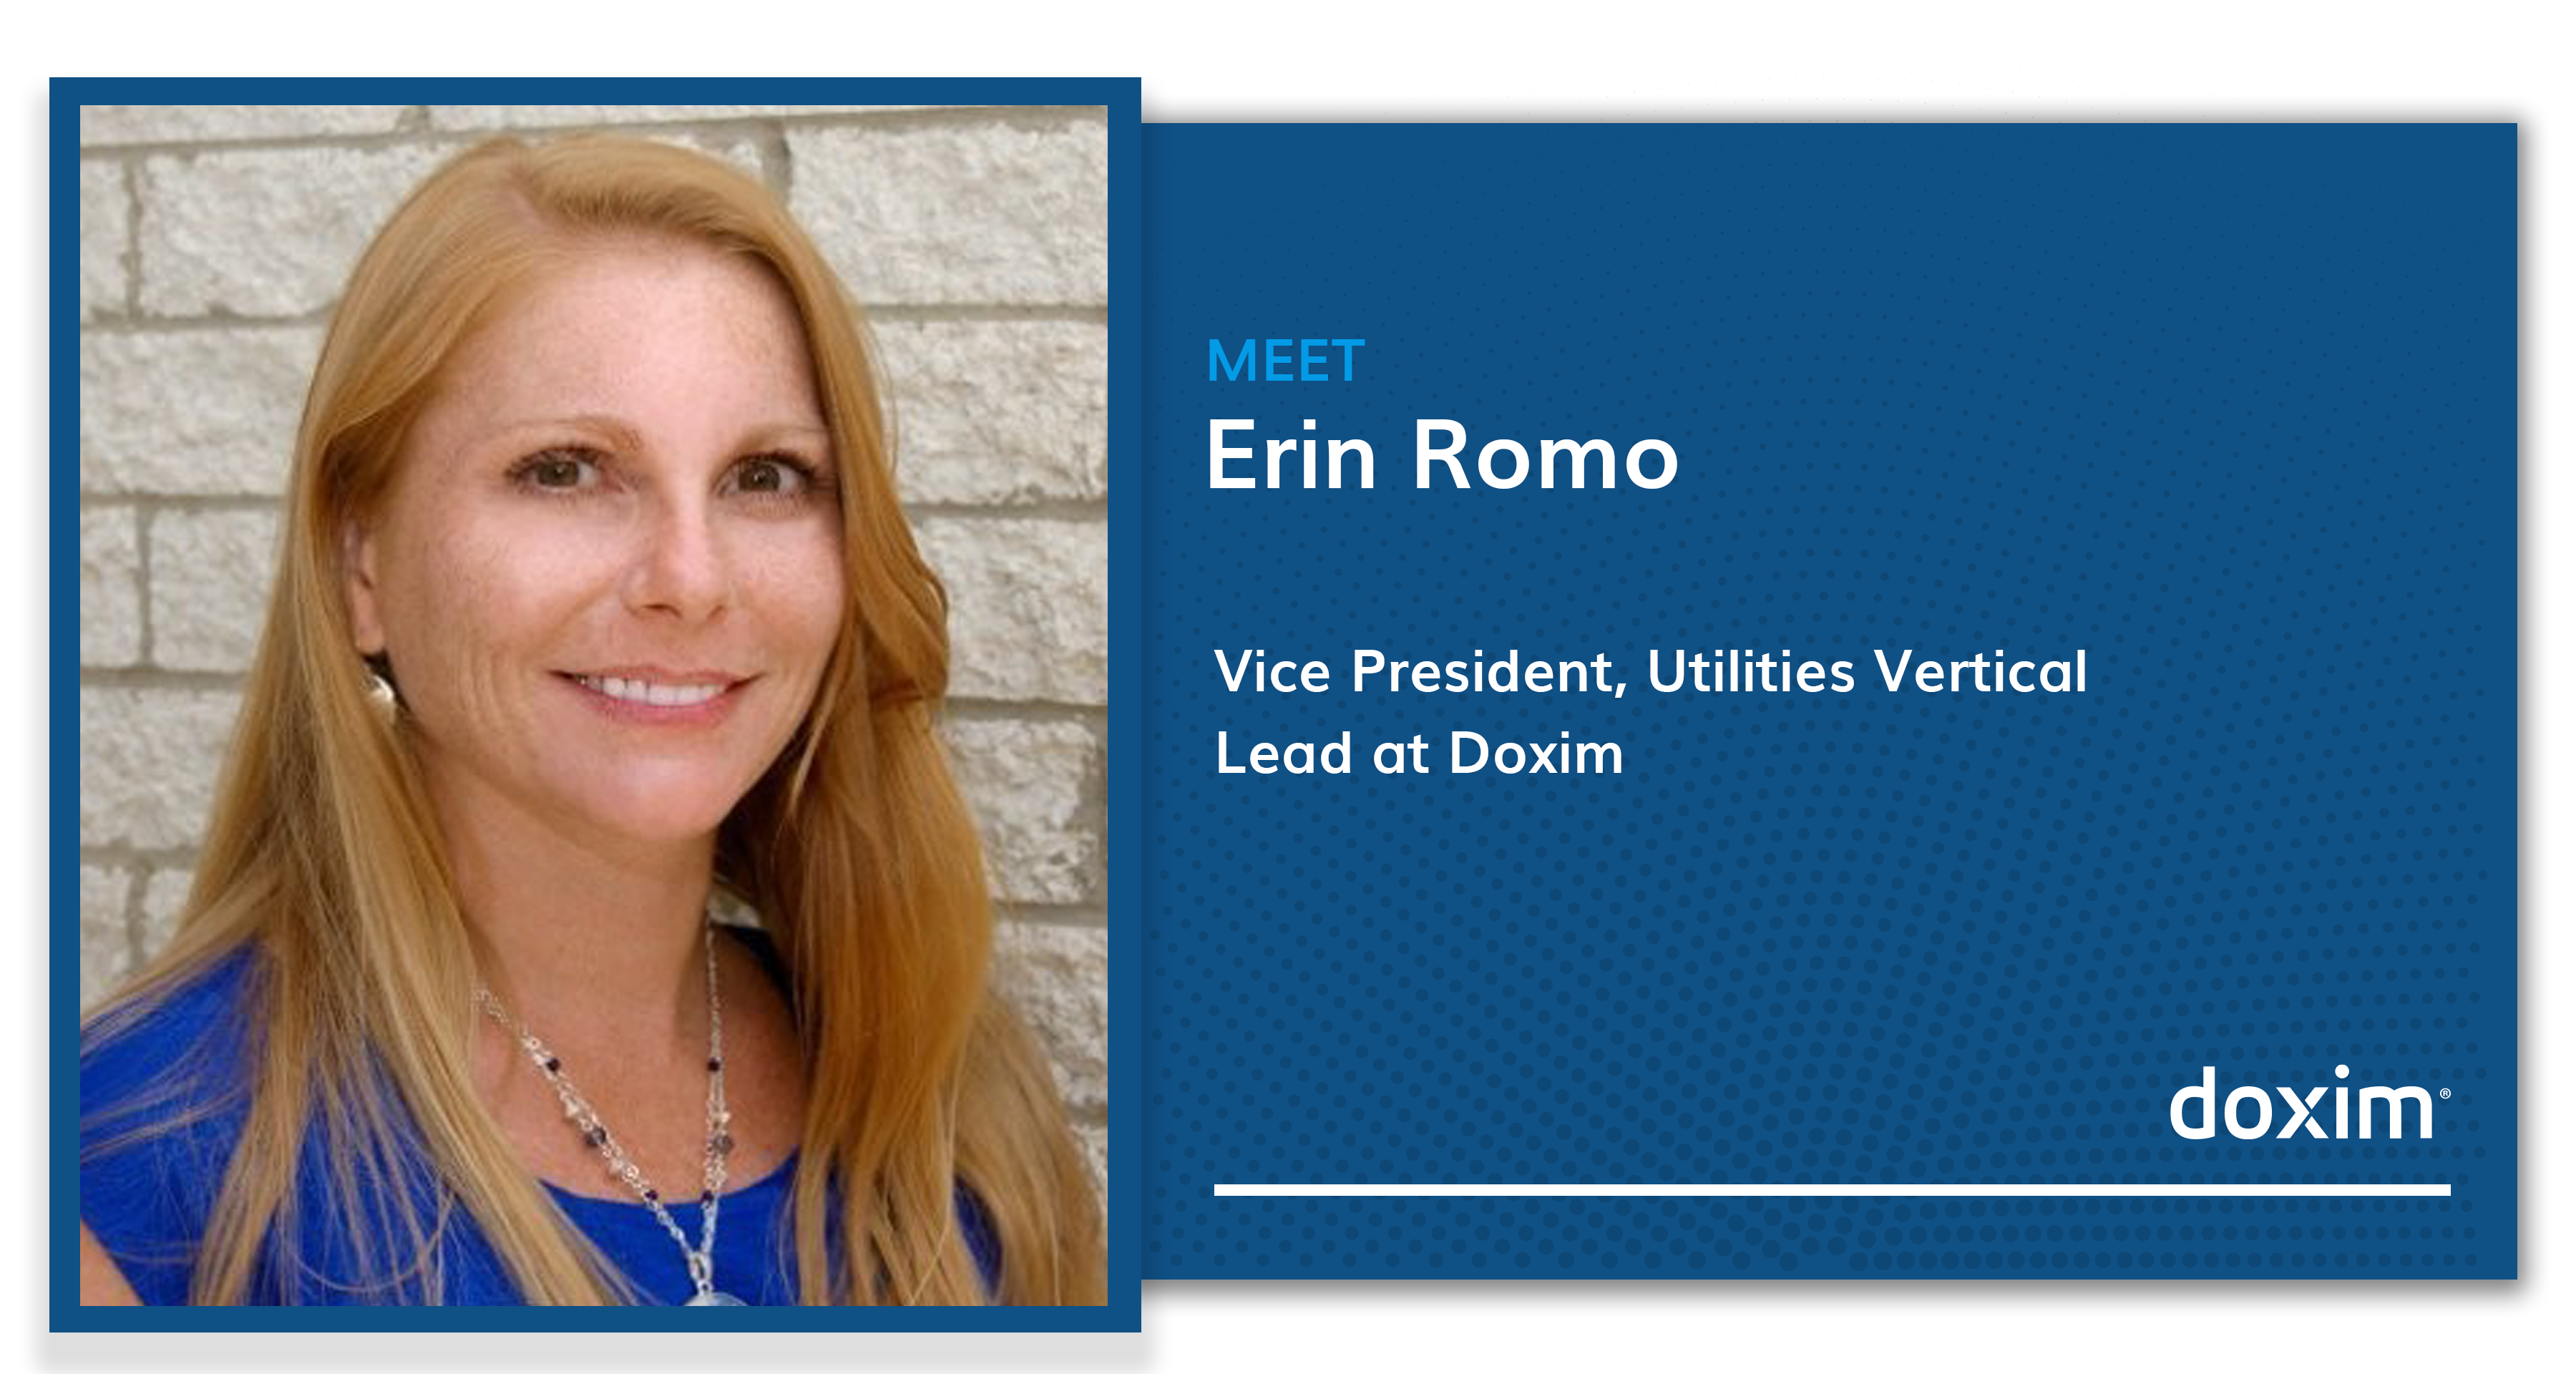 Meet Erin Romo, Vice President, Utilities Vertical Lead